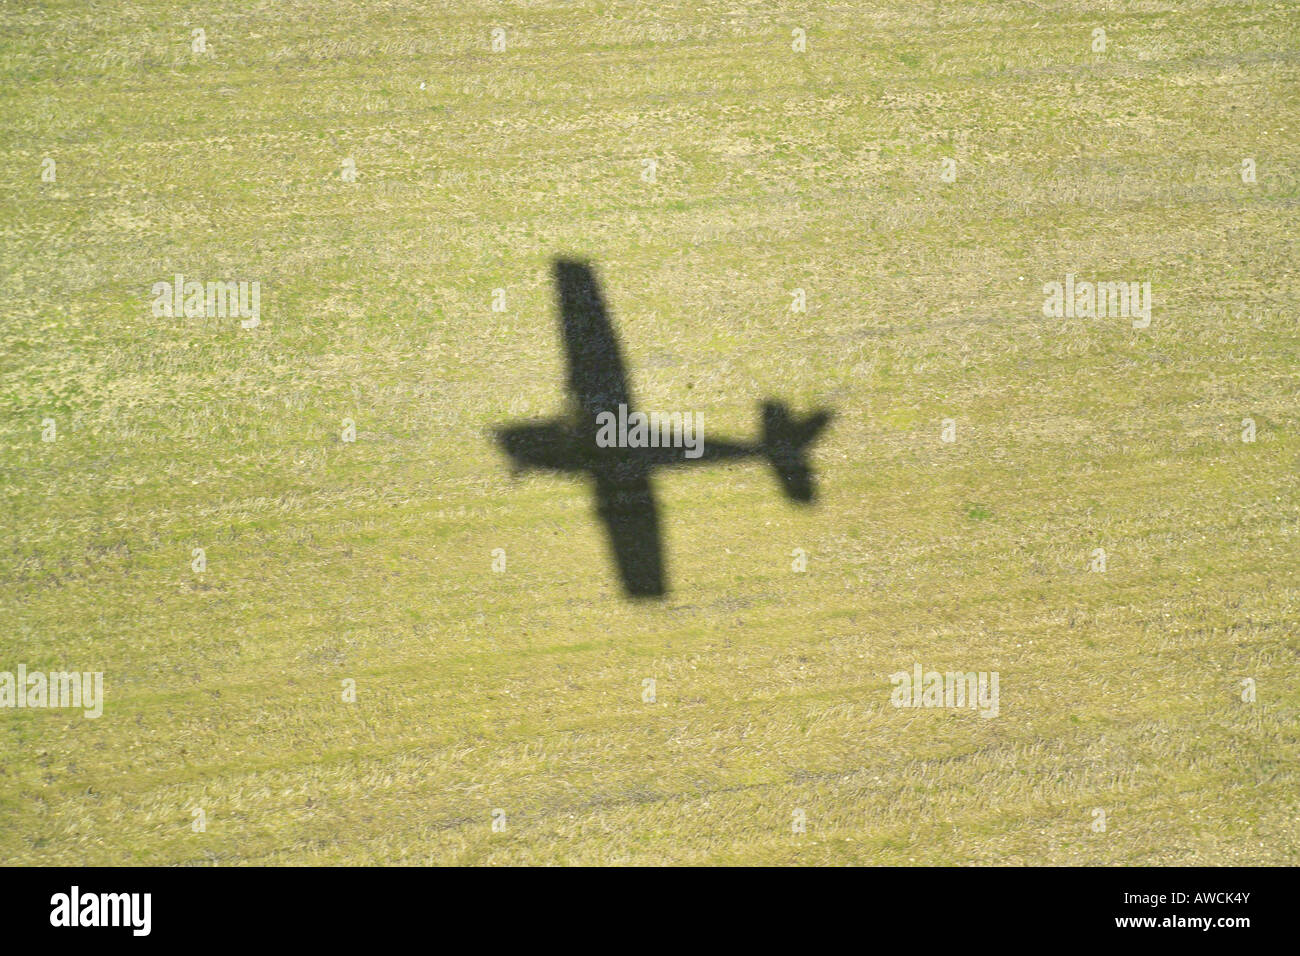 Vista aerea che mostra l'ombra generata da un aeromobile leggero su un campo. L'ombra è stata fatta da un Cessna 172 in decollo Foto Stock